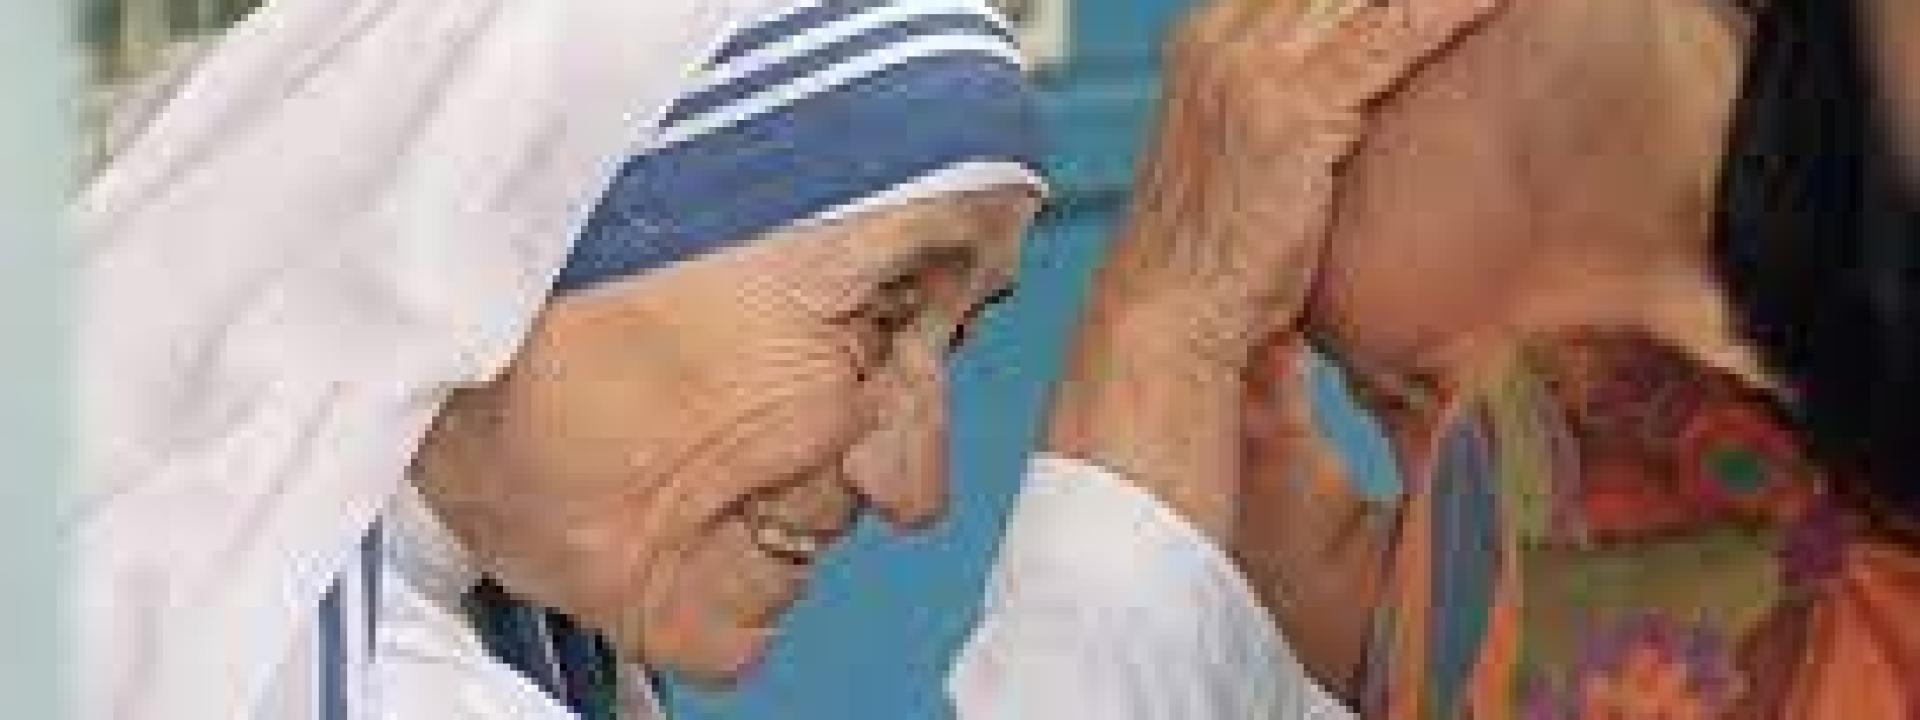 L'India blocca tutti i conti bancari di Madre Teresa